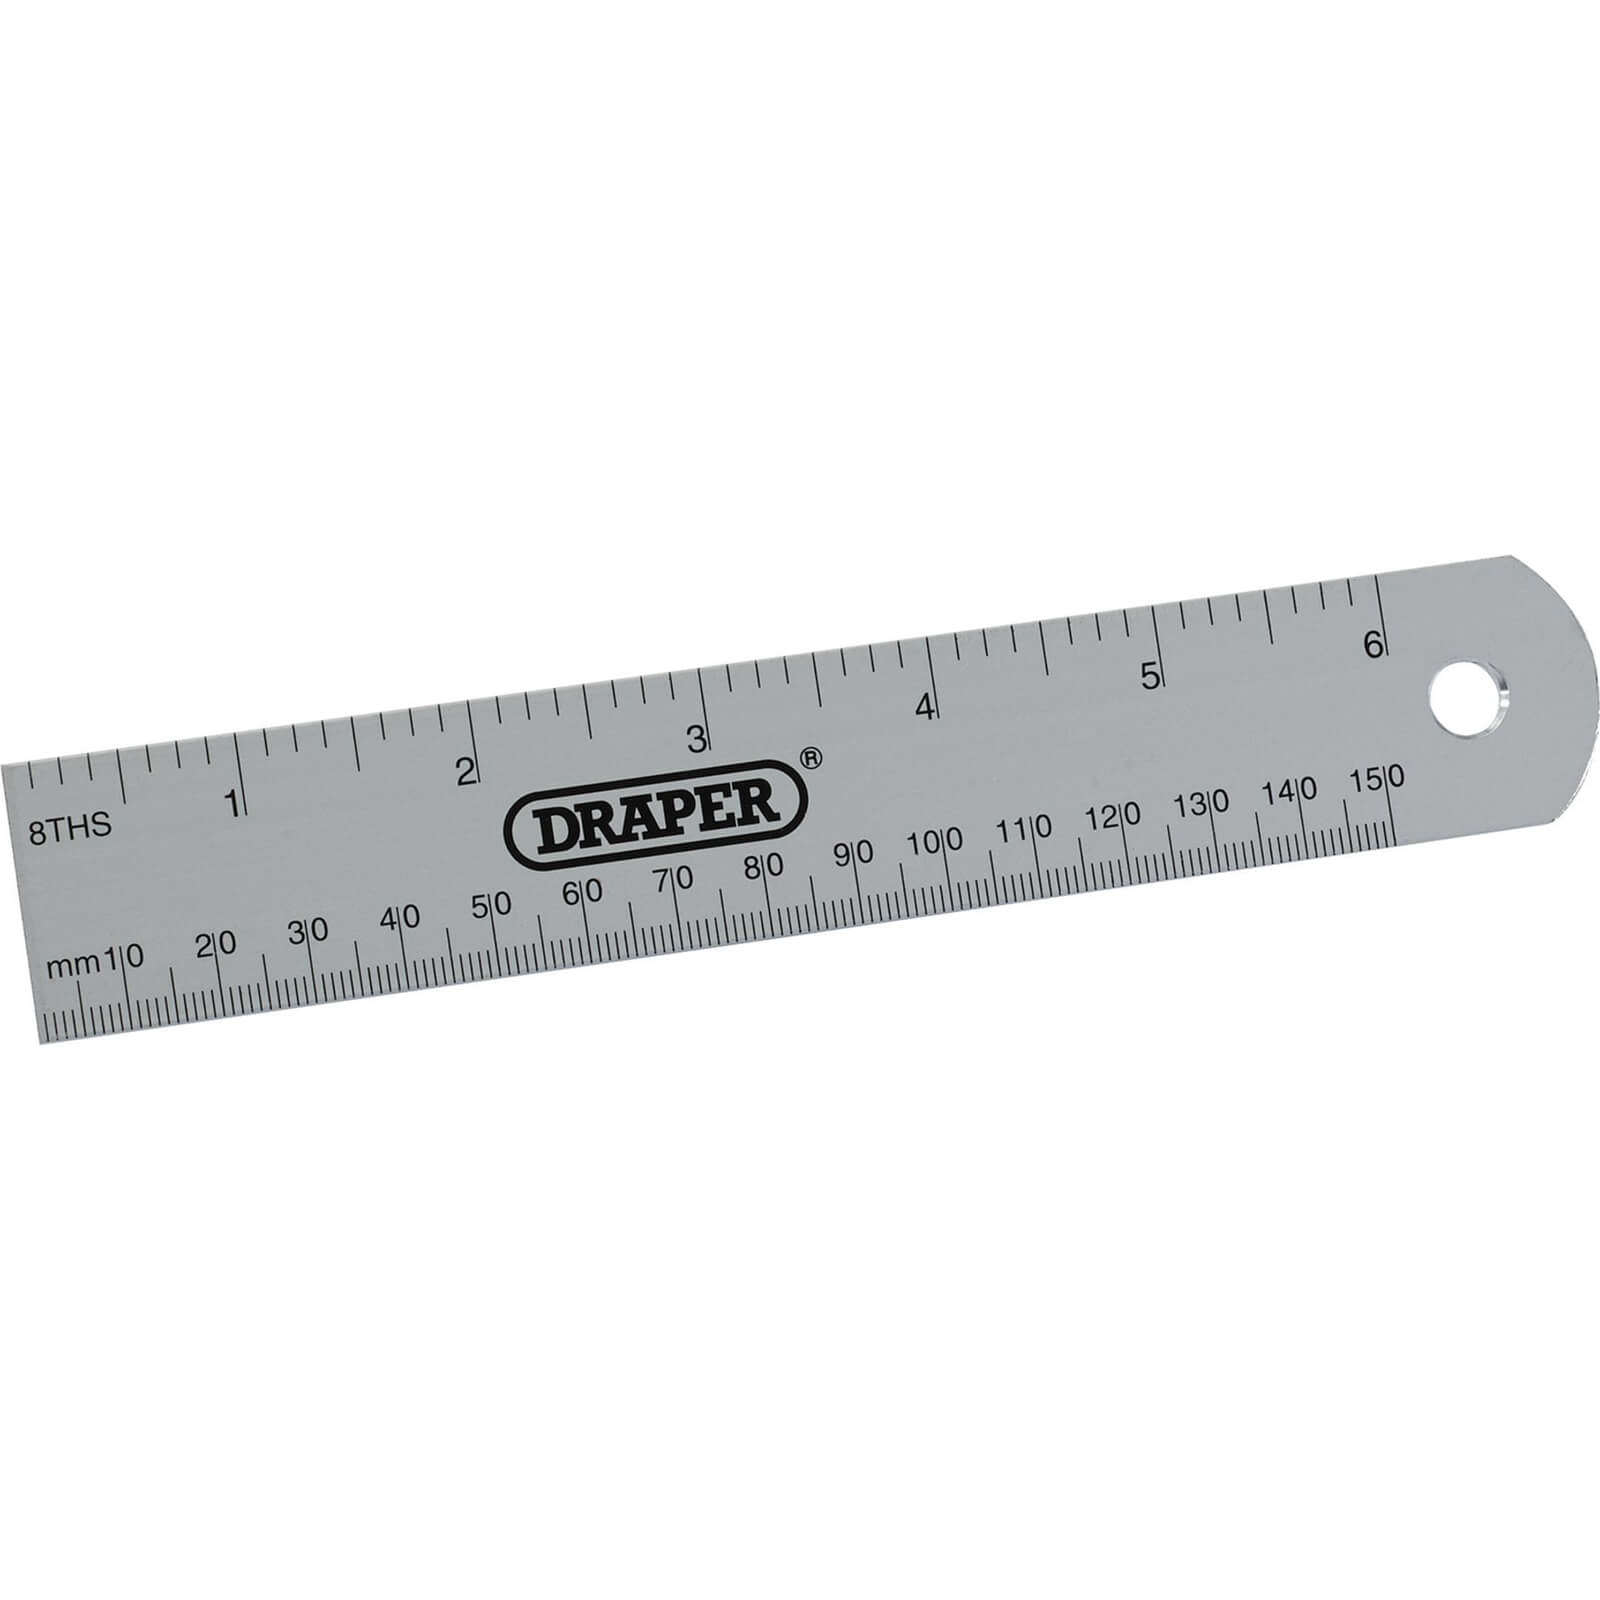 Photos - Tape Measure and Surveyor Tape Draper D19 Aluminium Rule 6" / 150mm 